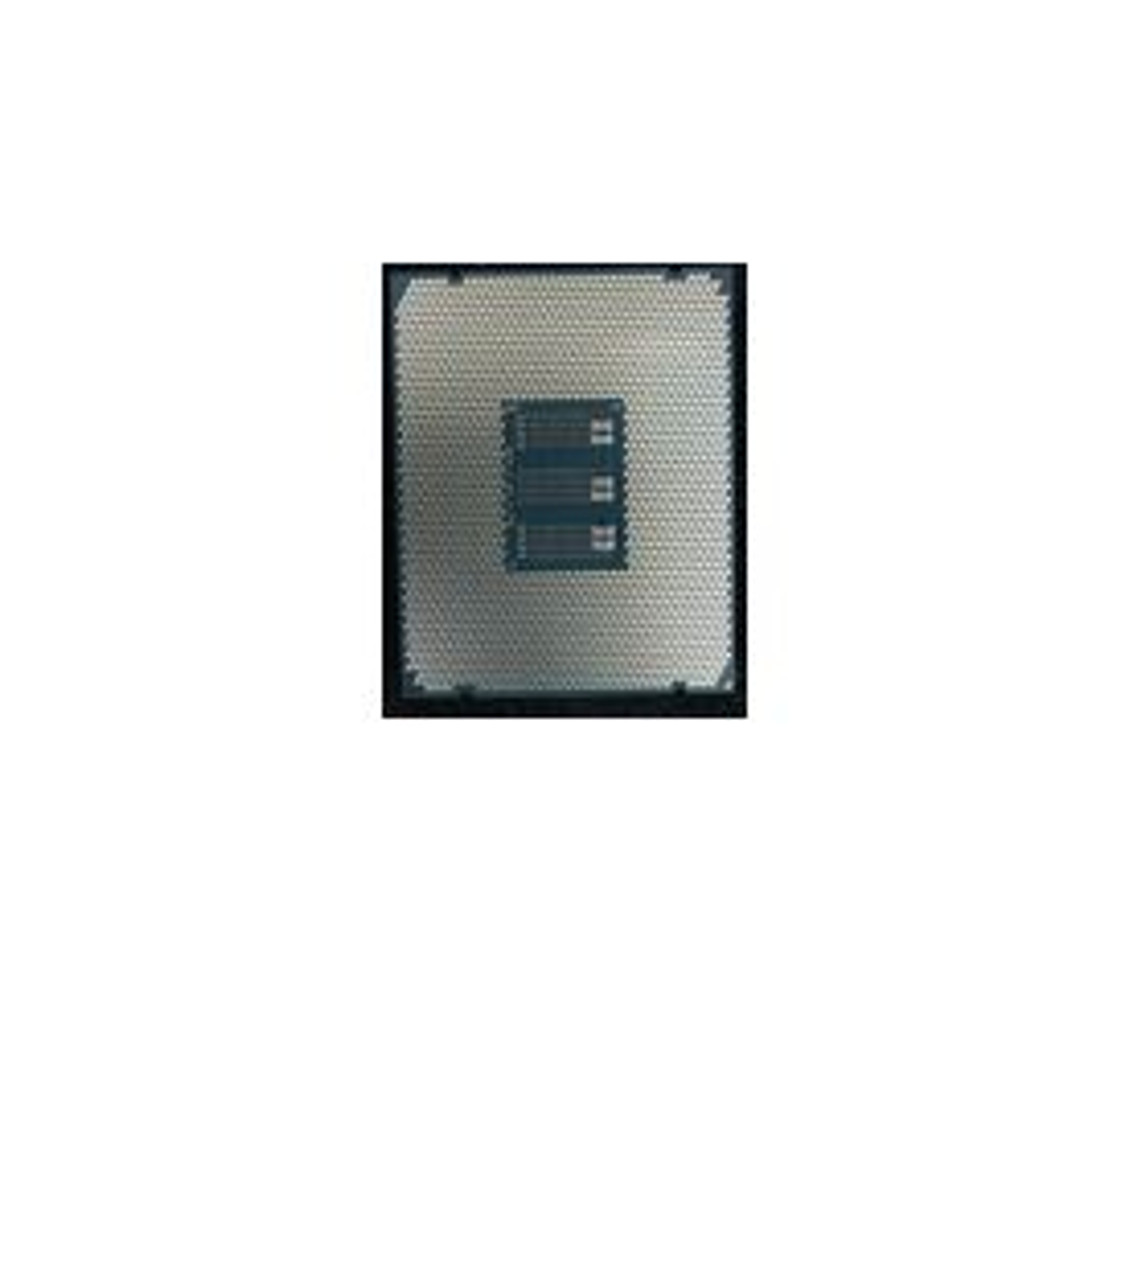 SPS-CPU:2.2GHz 60M/165W/24C E7-8890v4BDW - 868053-001